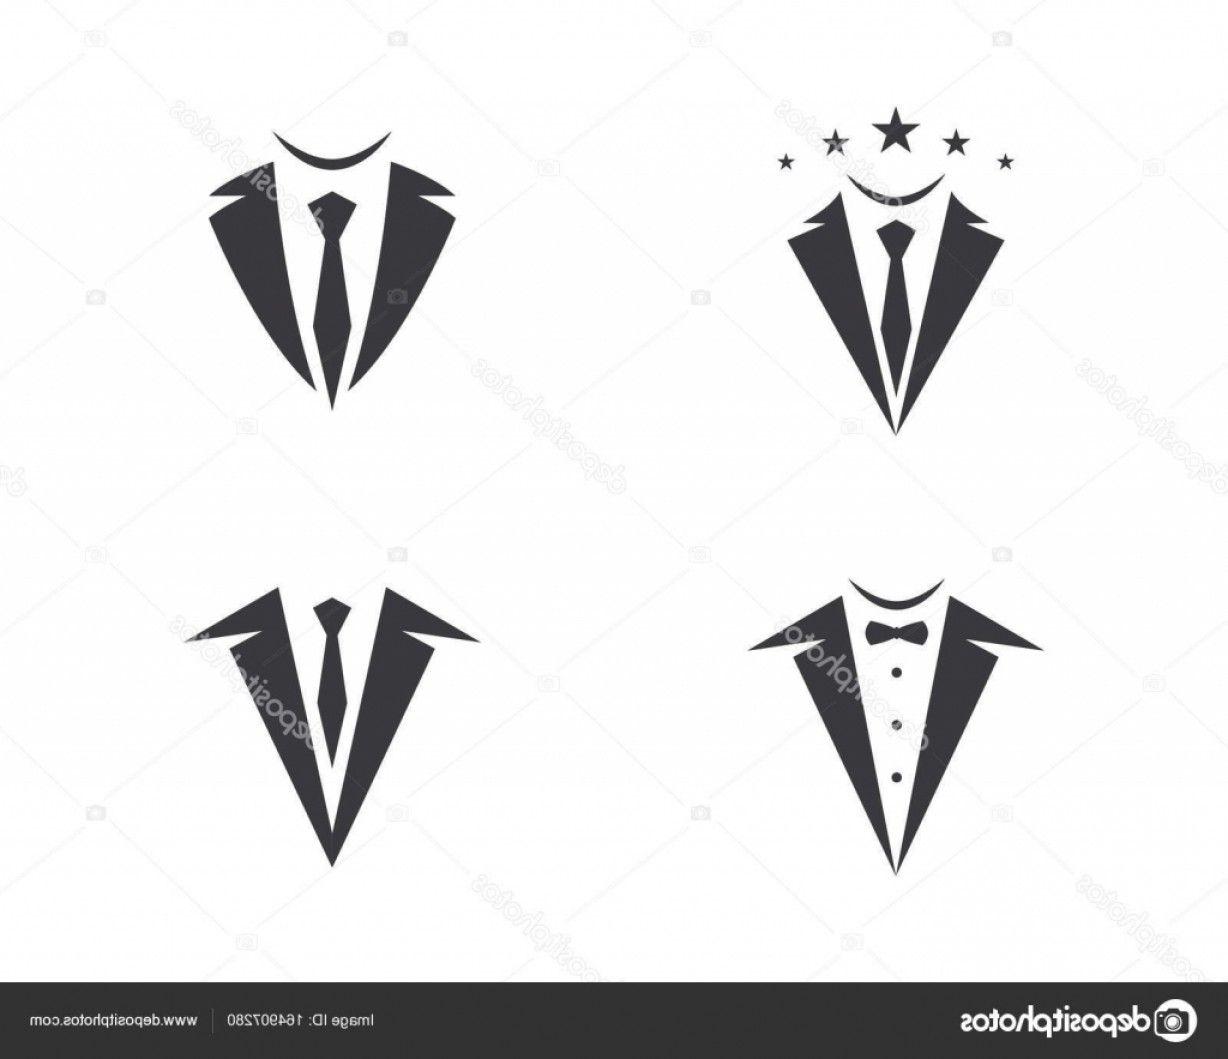 Tuxedo Logo - Stock Illustration Tuxedo Logo Template Vector Icon | sohadacouri